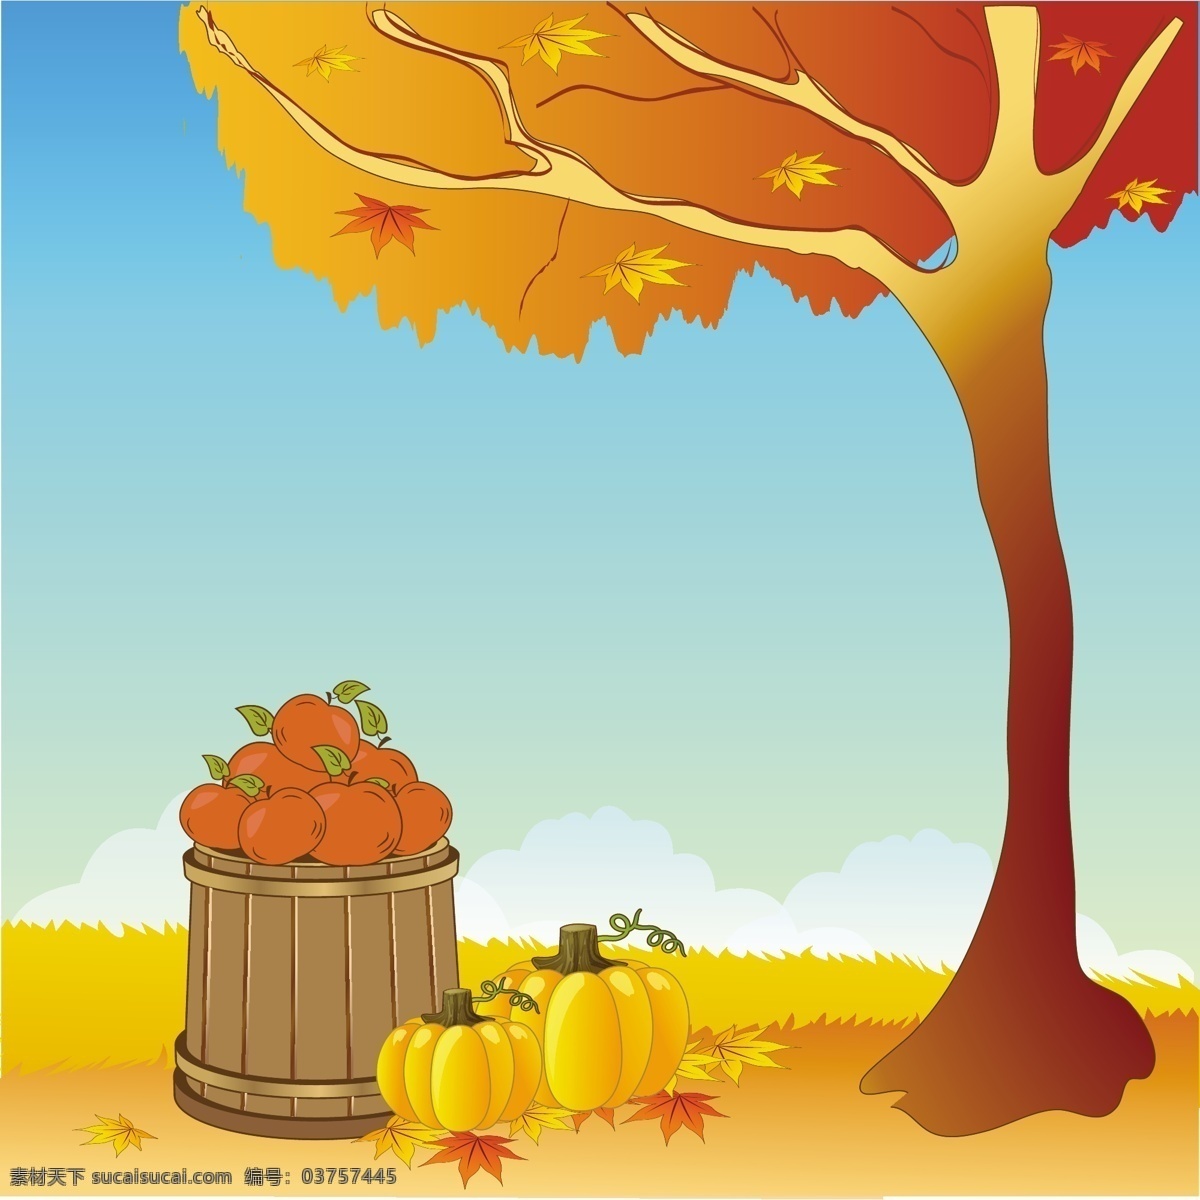 秋天的背景 背景 树 金 云 自然 天空 树叶 秋天 美丽 快乐 颜色 感恩节 景观 苹果 橙色 标志 事件 南瓜 黄色